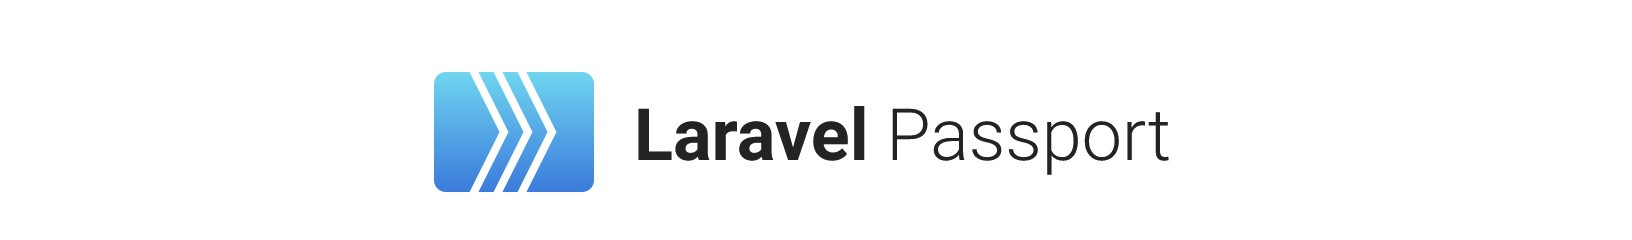 laravel passport